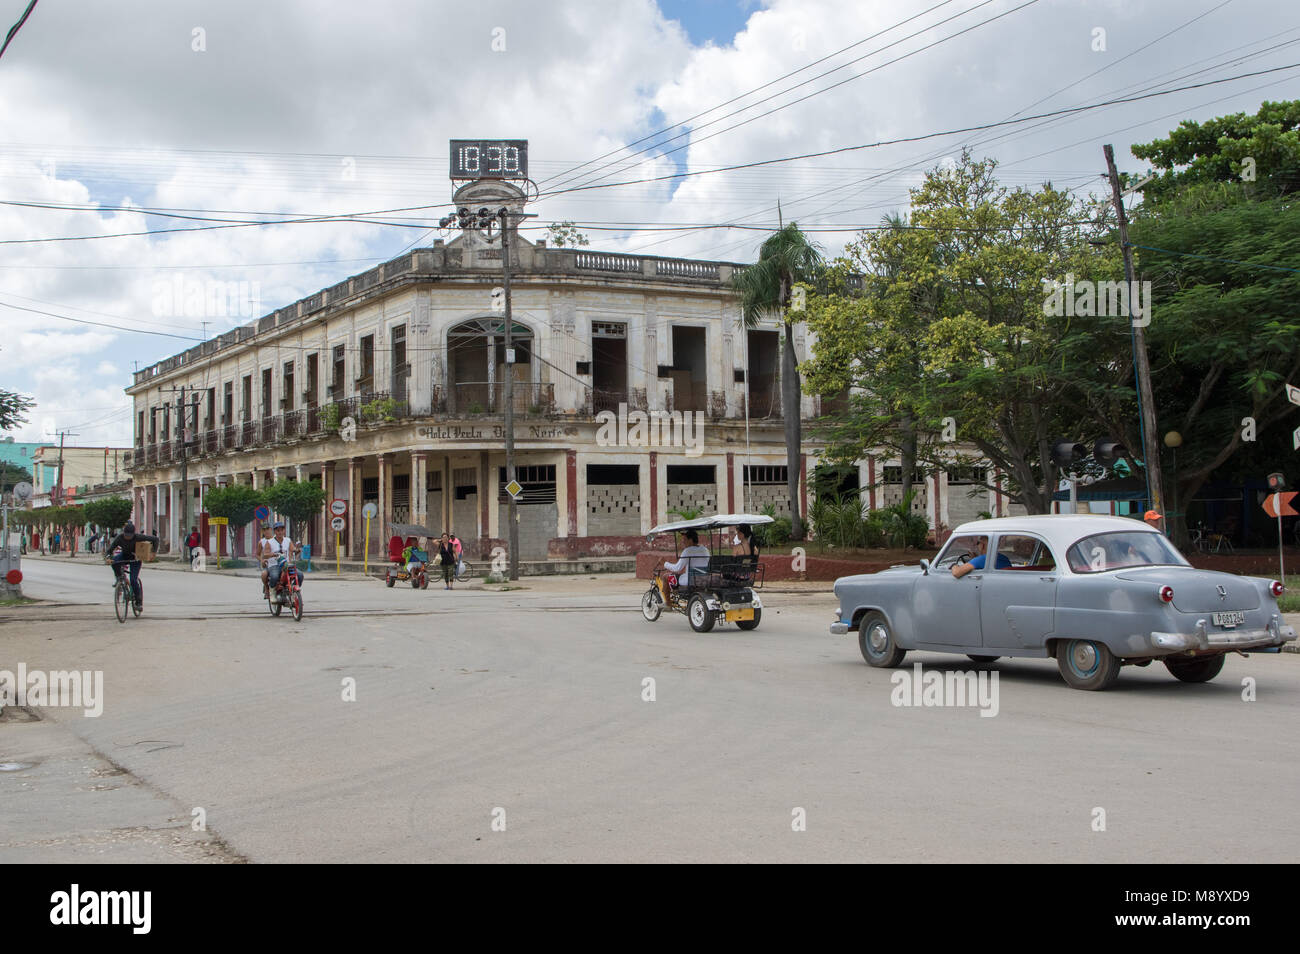 The former Hotel Perla del Norte building in the city of Moron, Cuba Stock Photo